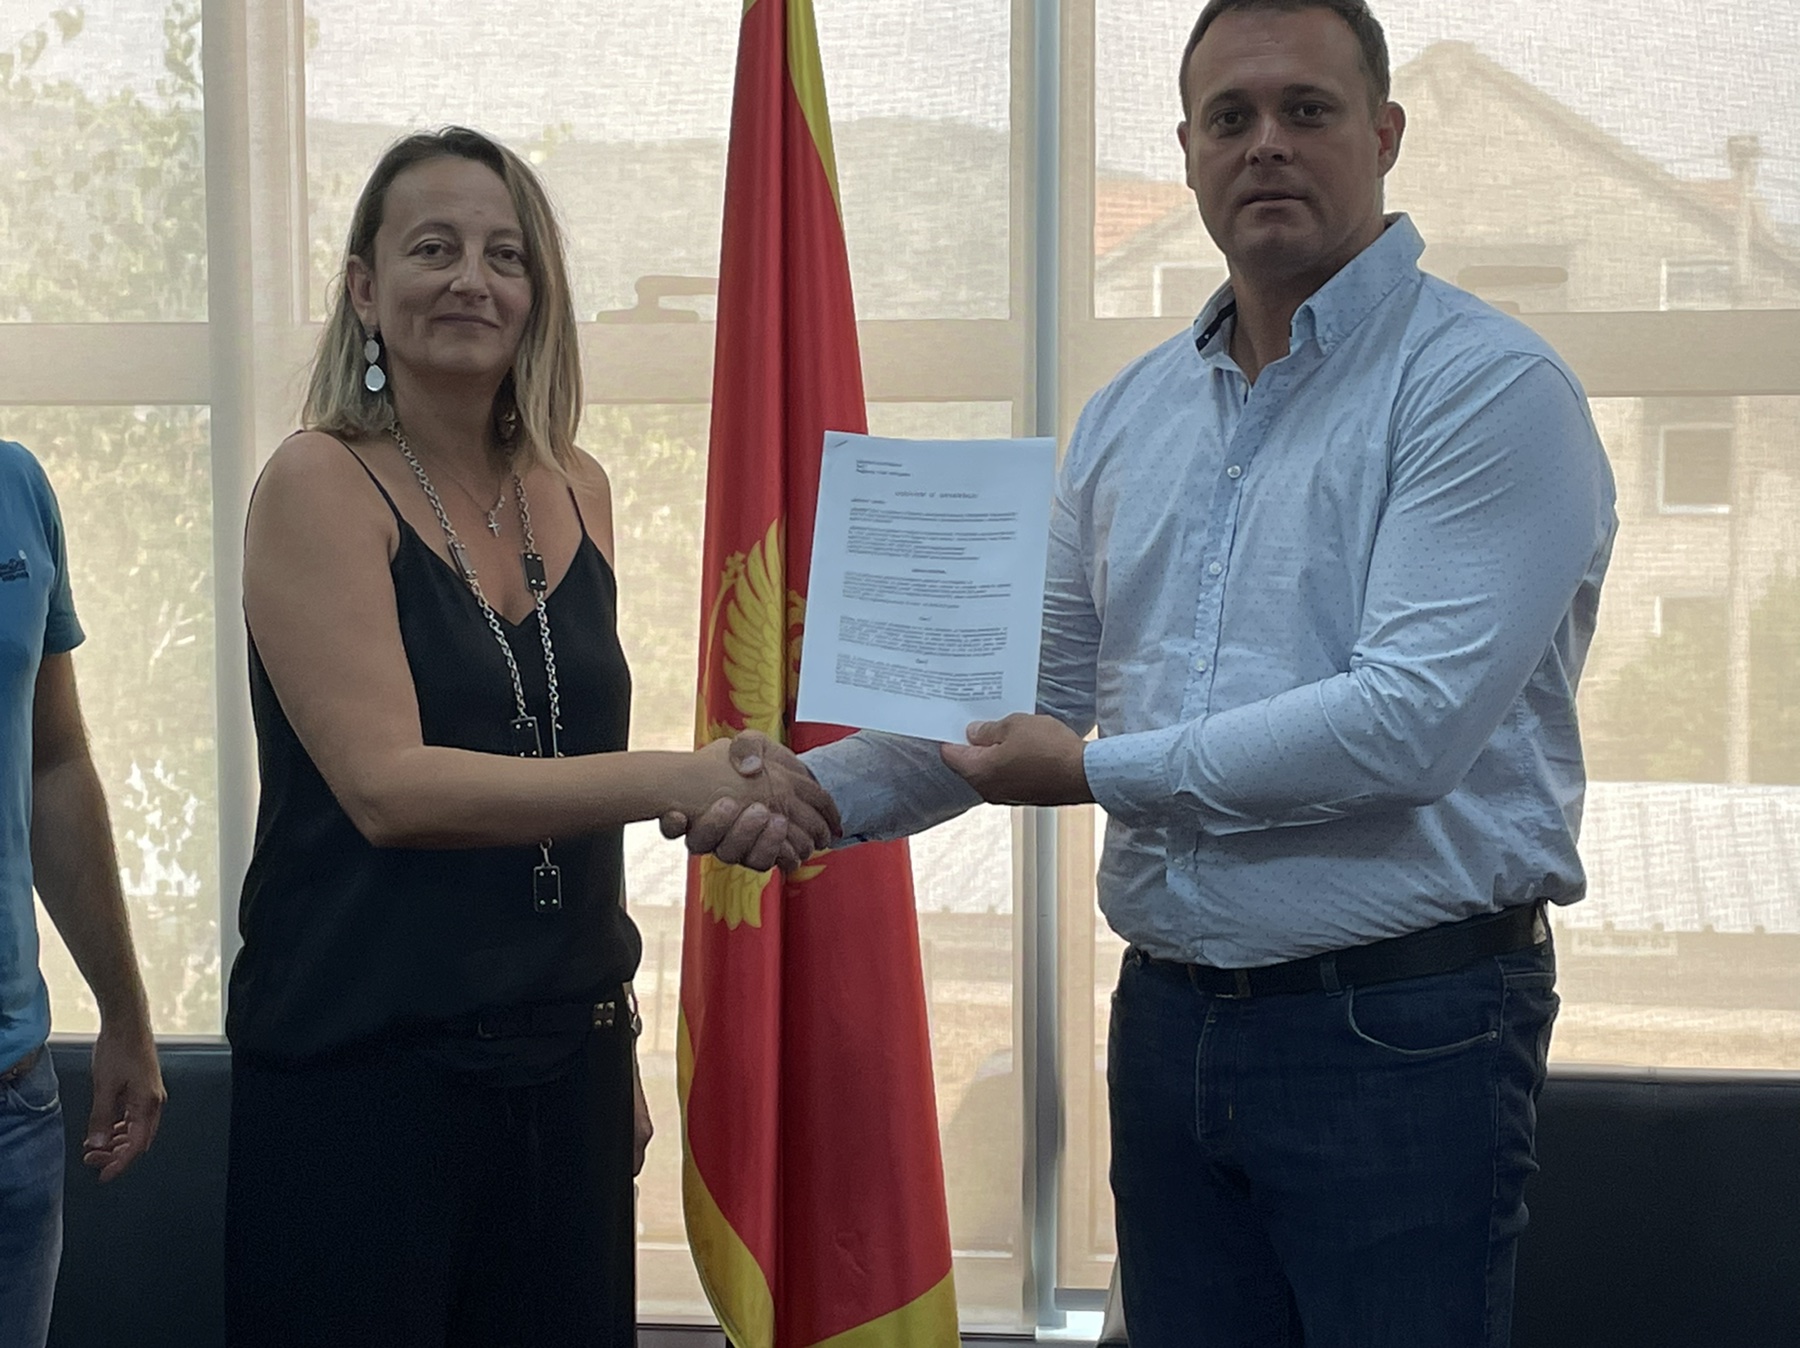 Potpisan ugovor za izgradnju IV sanitarne kade na deponiji "Livade"